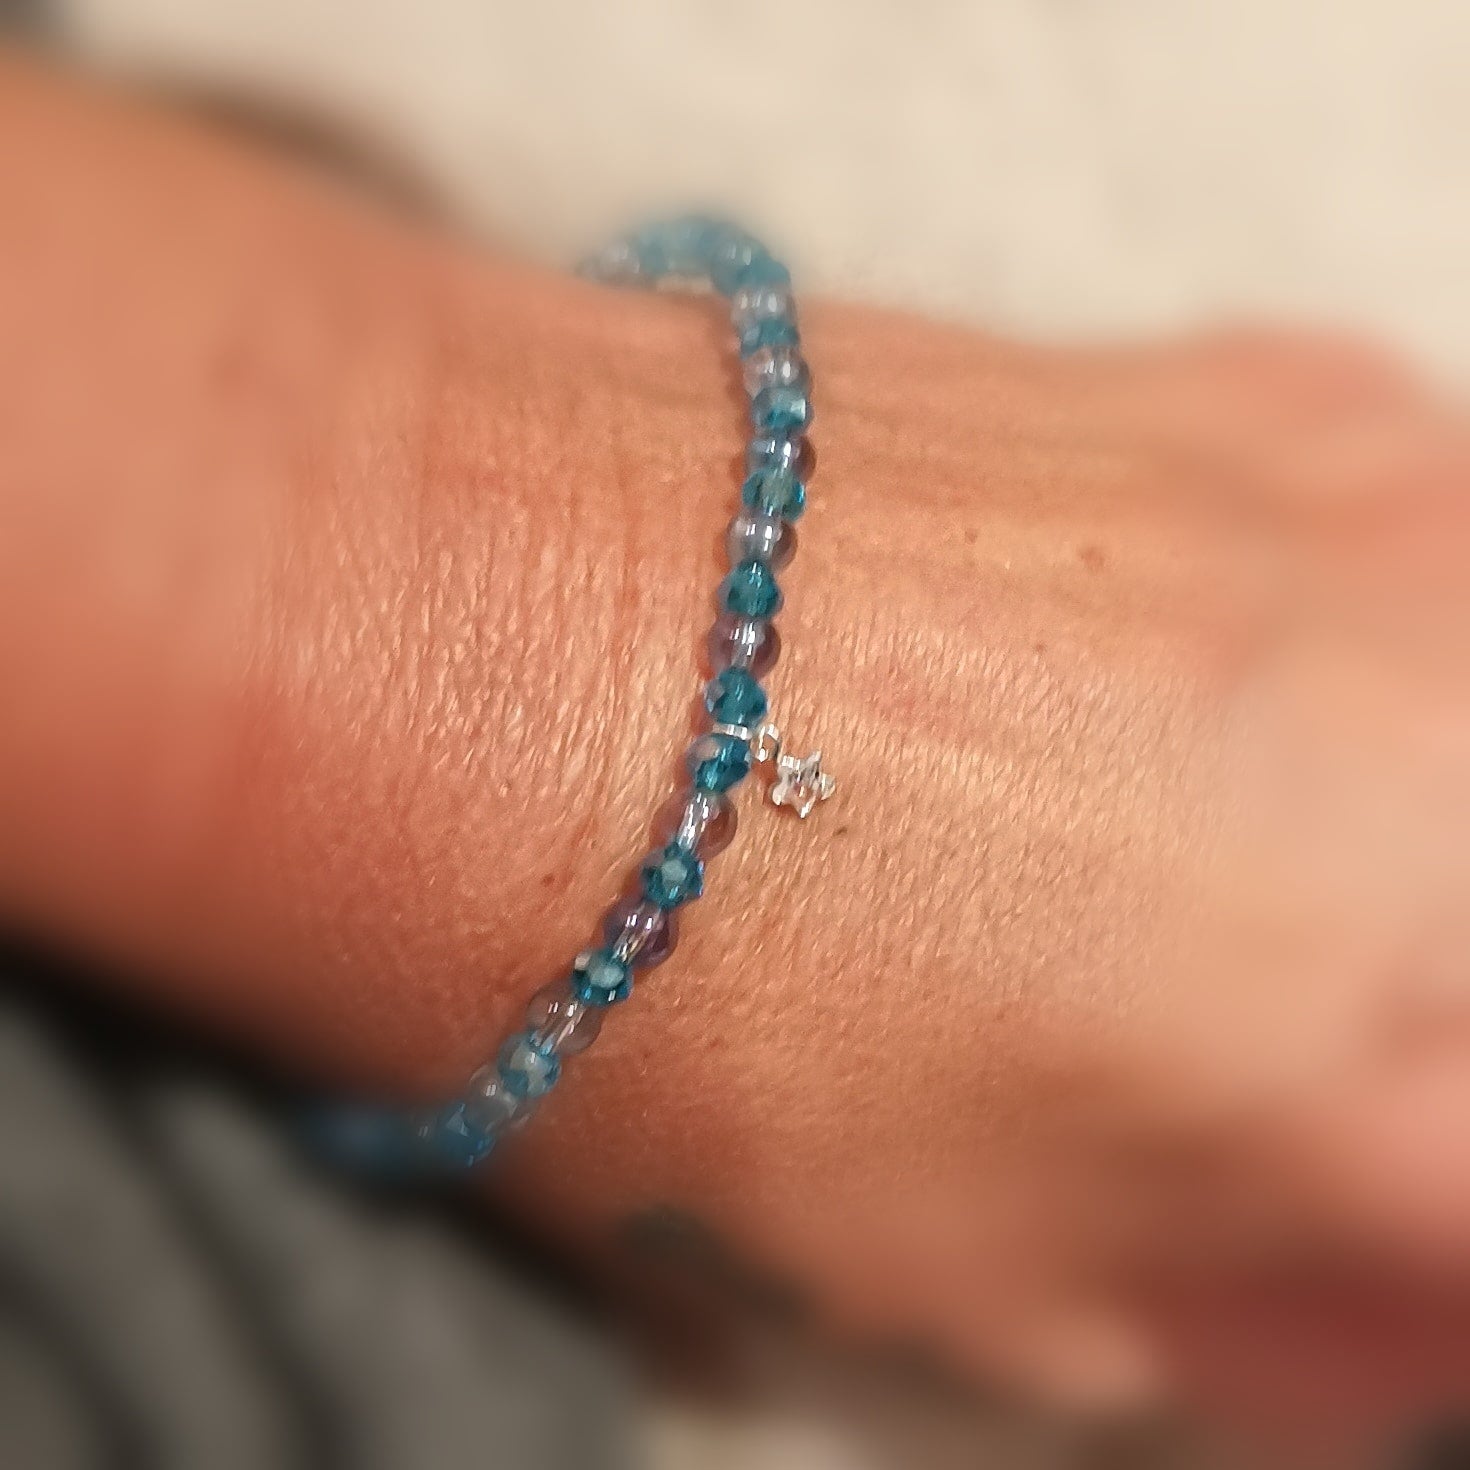 Aqua Aura Kristall blau türkis Edelstein Heilstein Karma Armband, geweiht - Karmaerlösung, Grunderneuerung